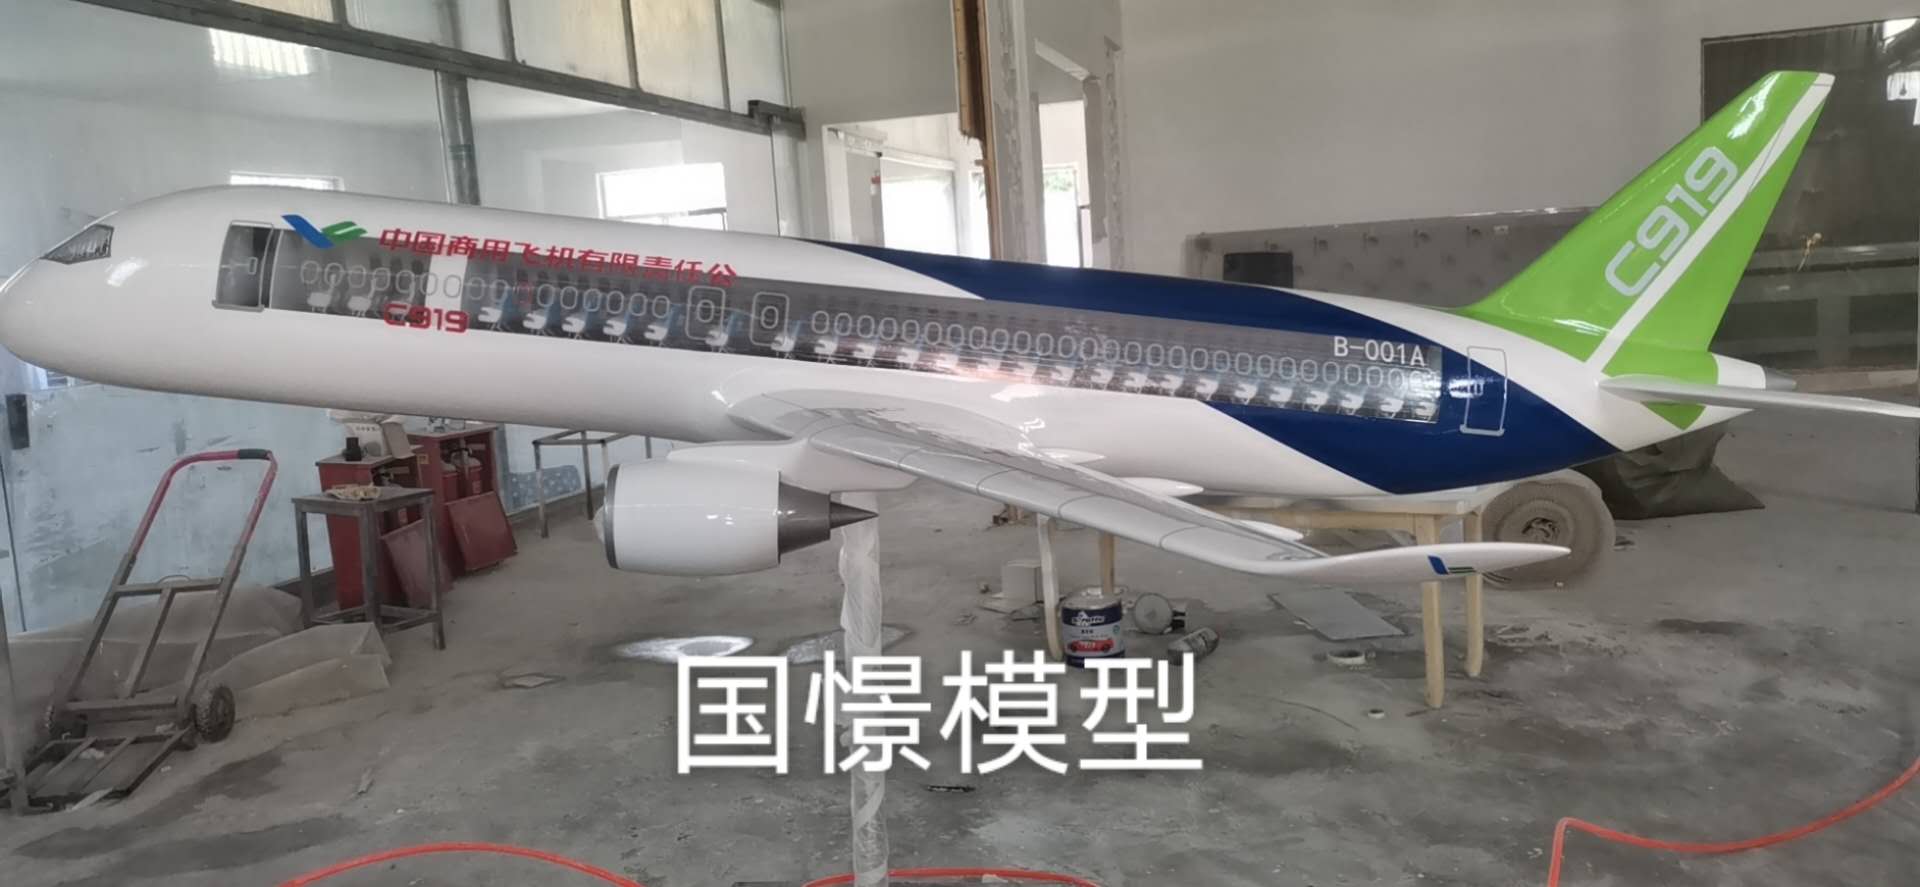 竹溪县飞机模型